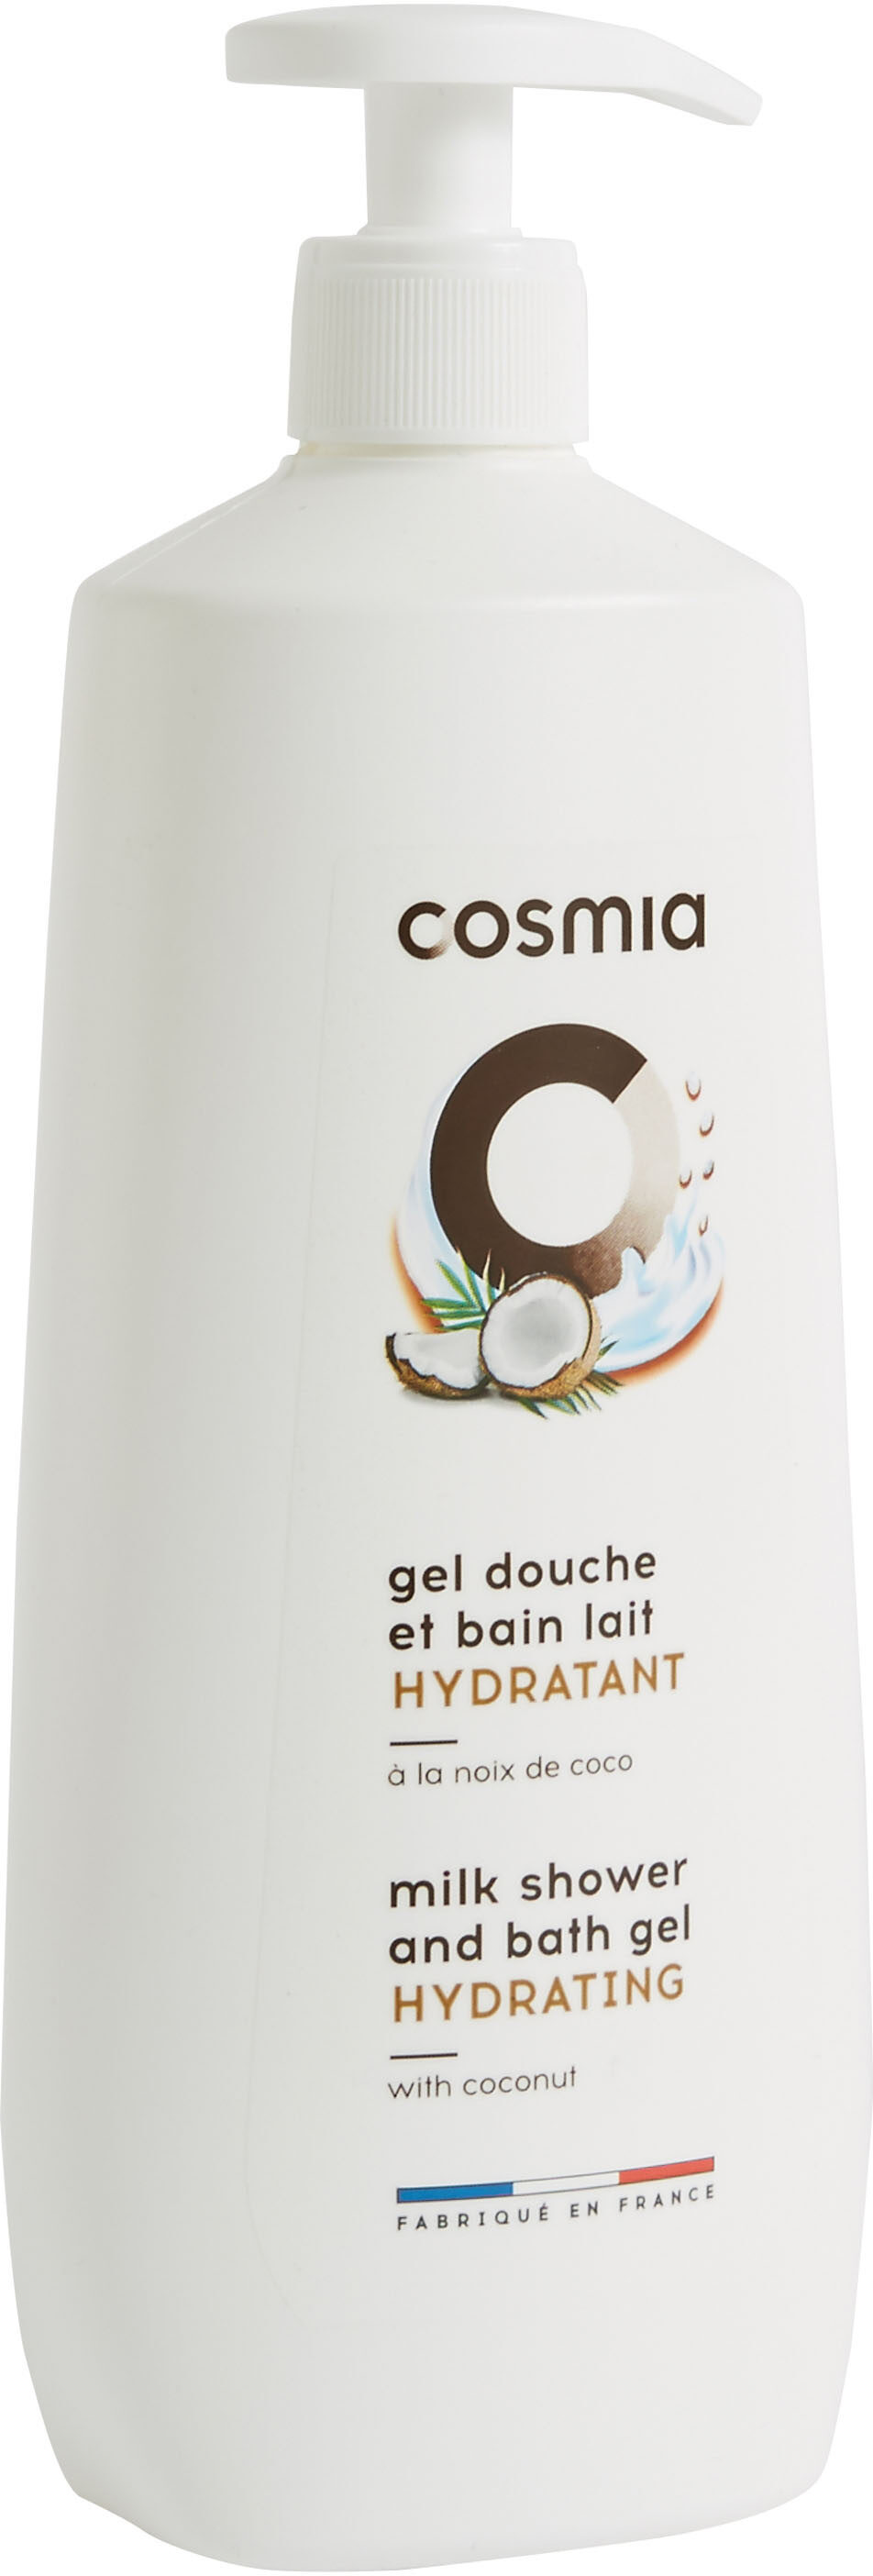 Cosmia gel douche et bain lait hydratant a la noix de coco - Produto - fr